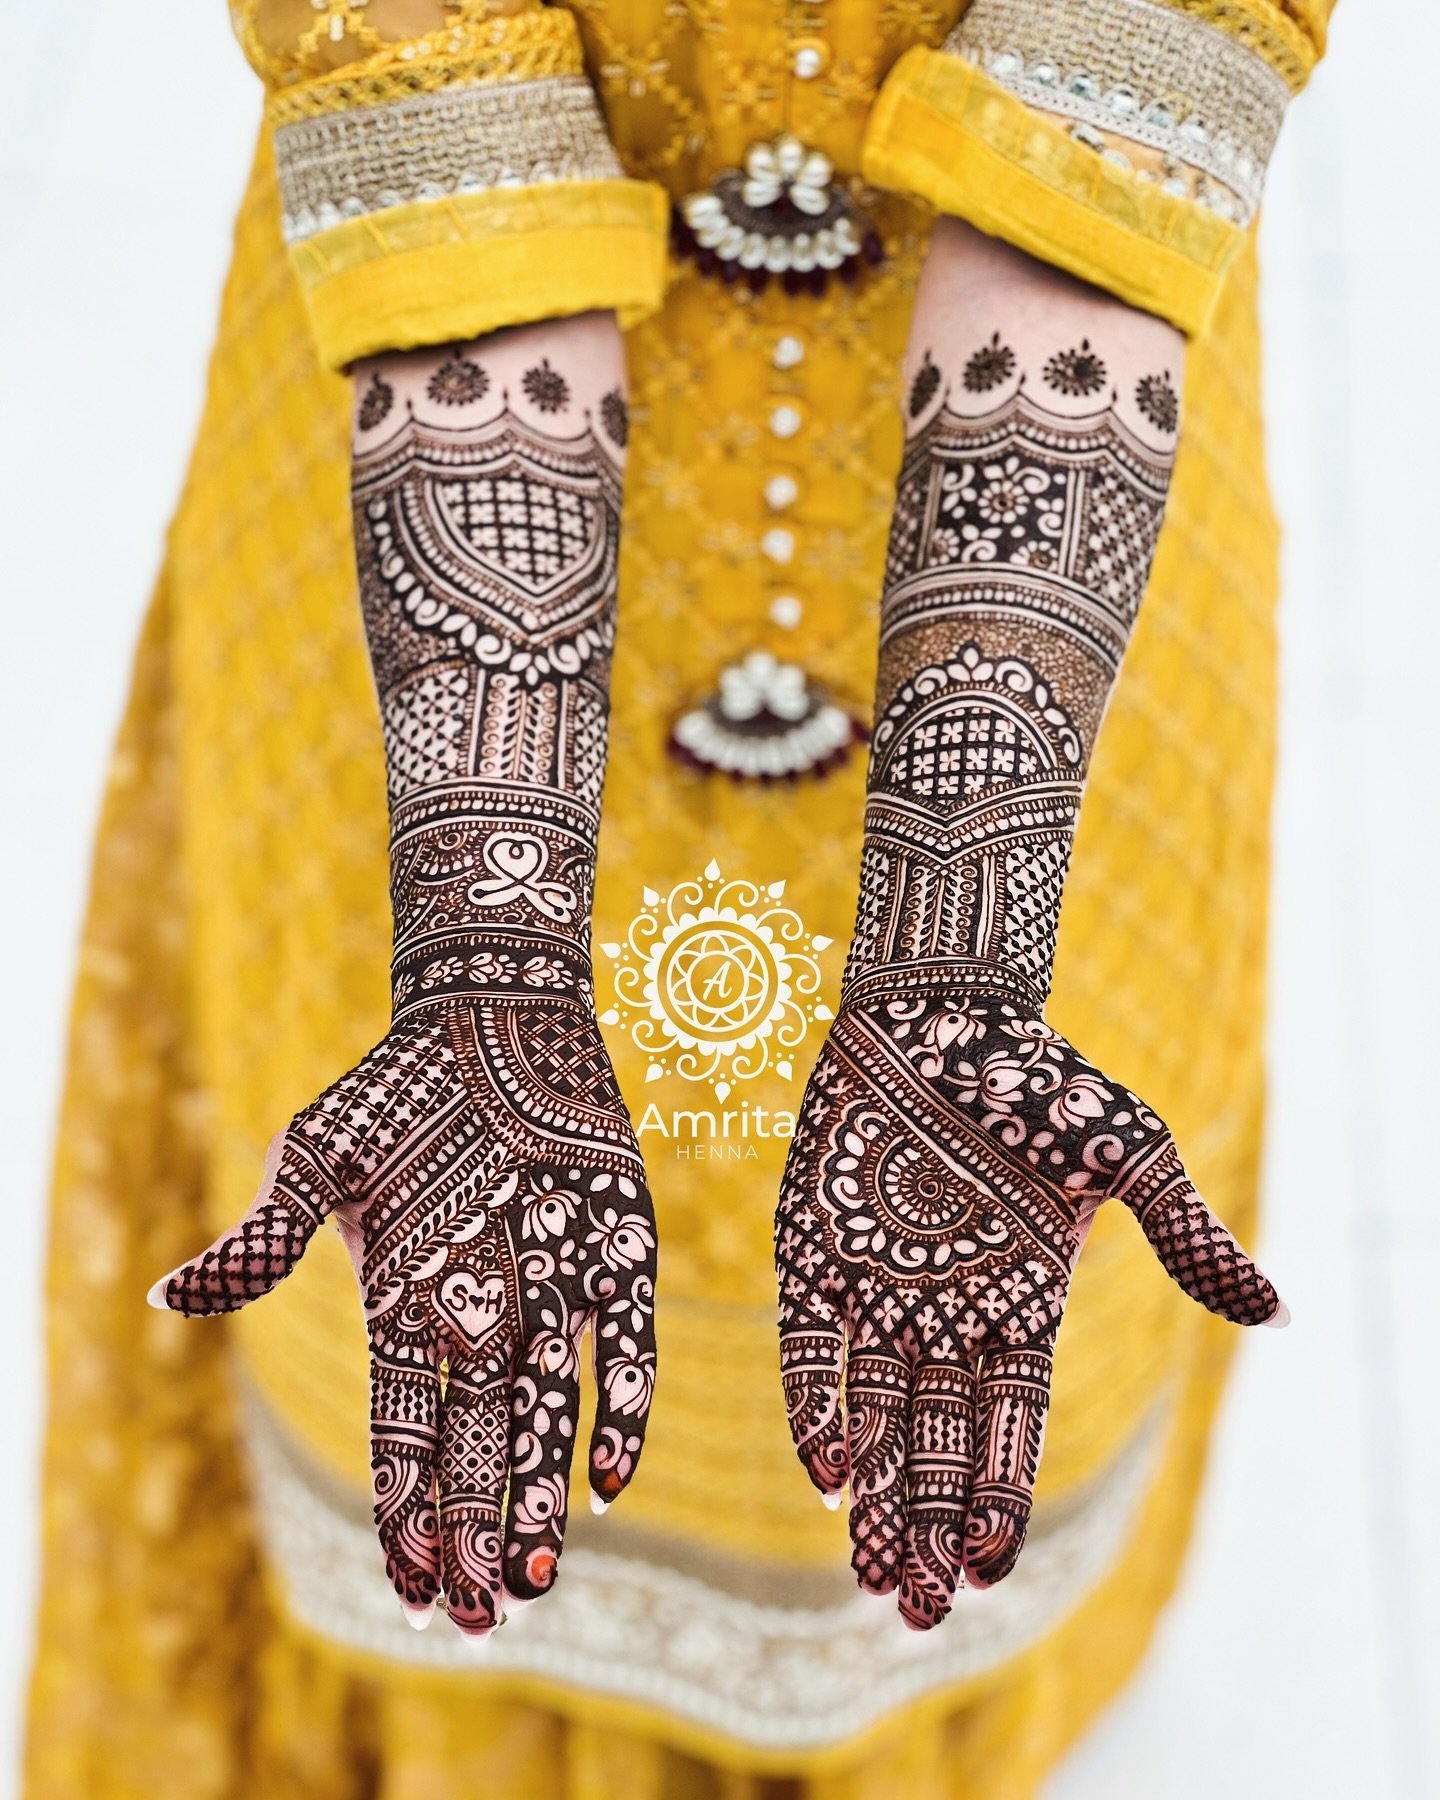 Forever in love with Subuhee&rsquo;s bridal henna! ❤️

#amritahenna #bridalmehndi #hennadesign #wedmegood #orlandoart #bridalhenna #dulhan #weddinginspo #indianwedding #orlandobride #mehandi #floridawedding #indianmehndi  #weddinginspiration #wedding